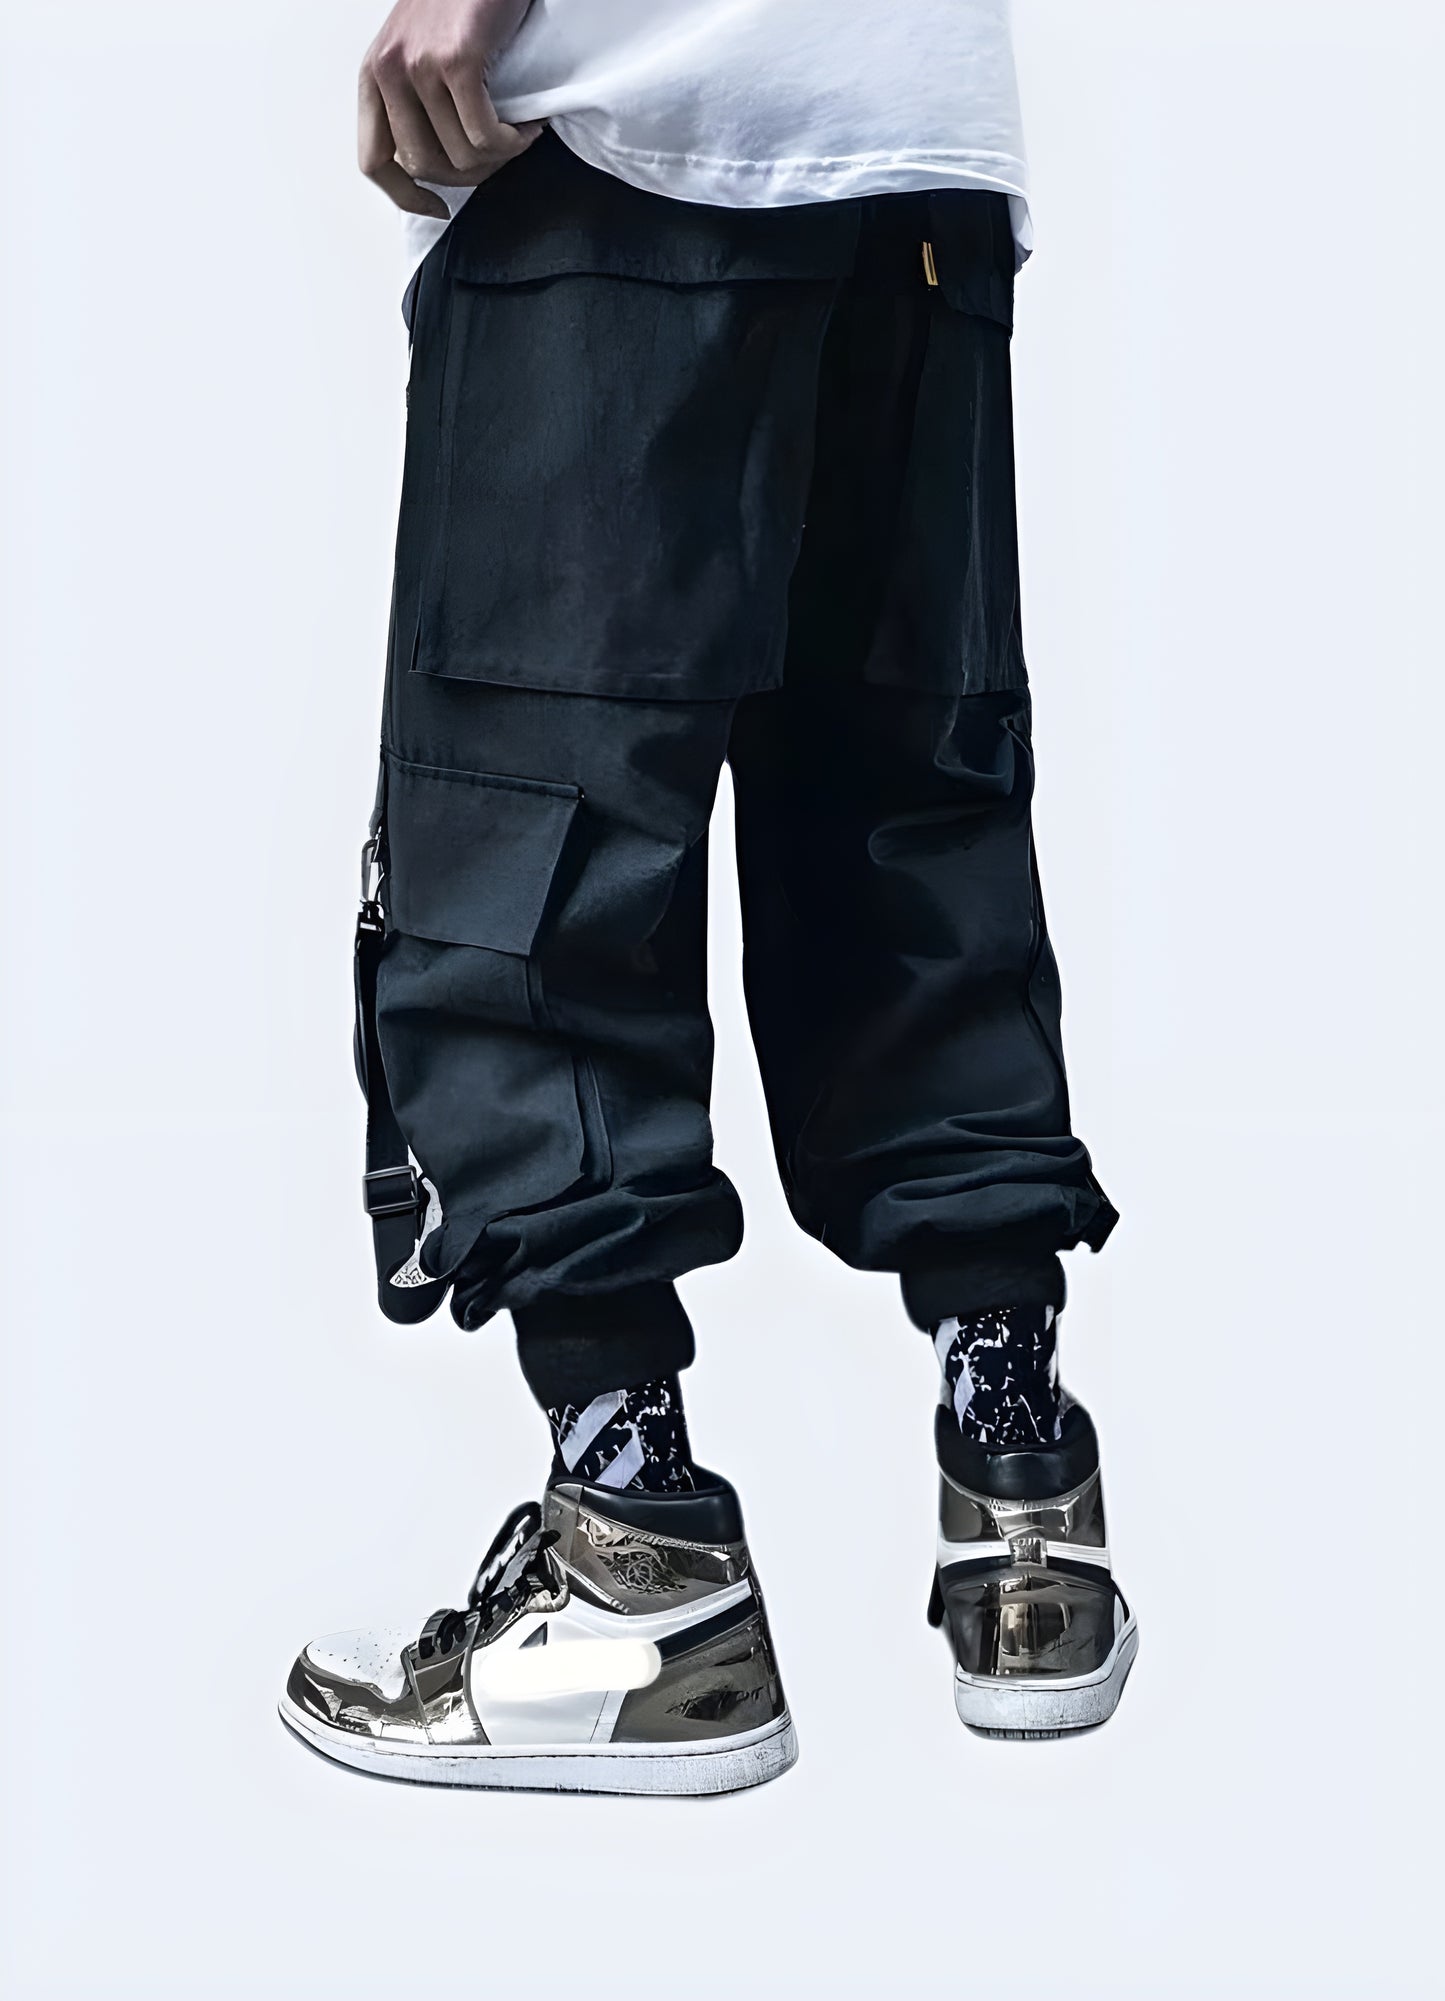 Techwear pants with straps black techwear pants.